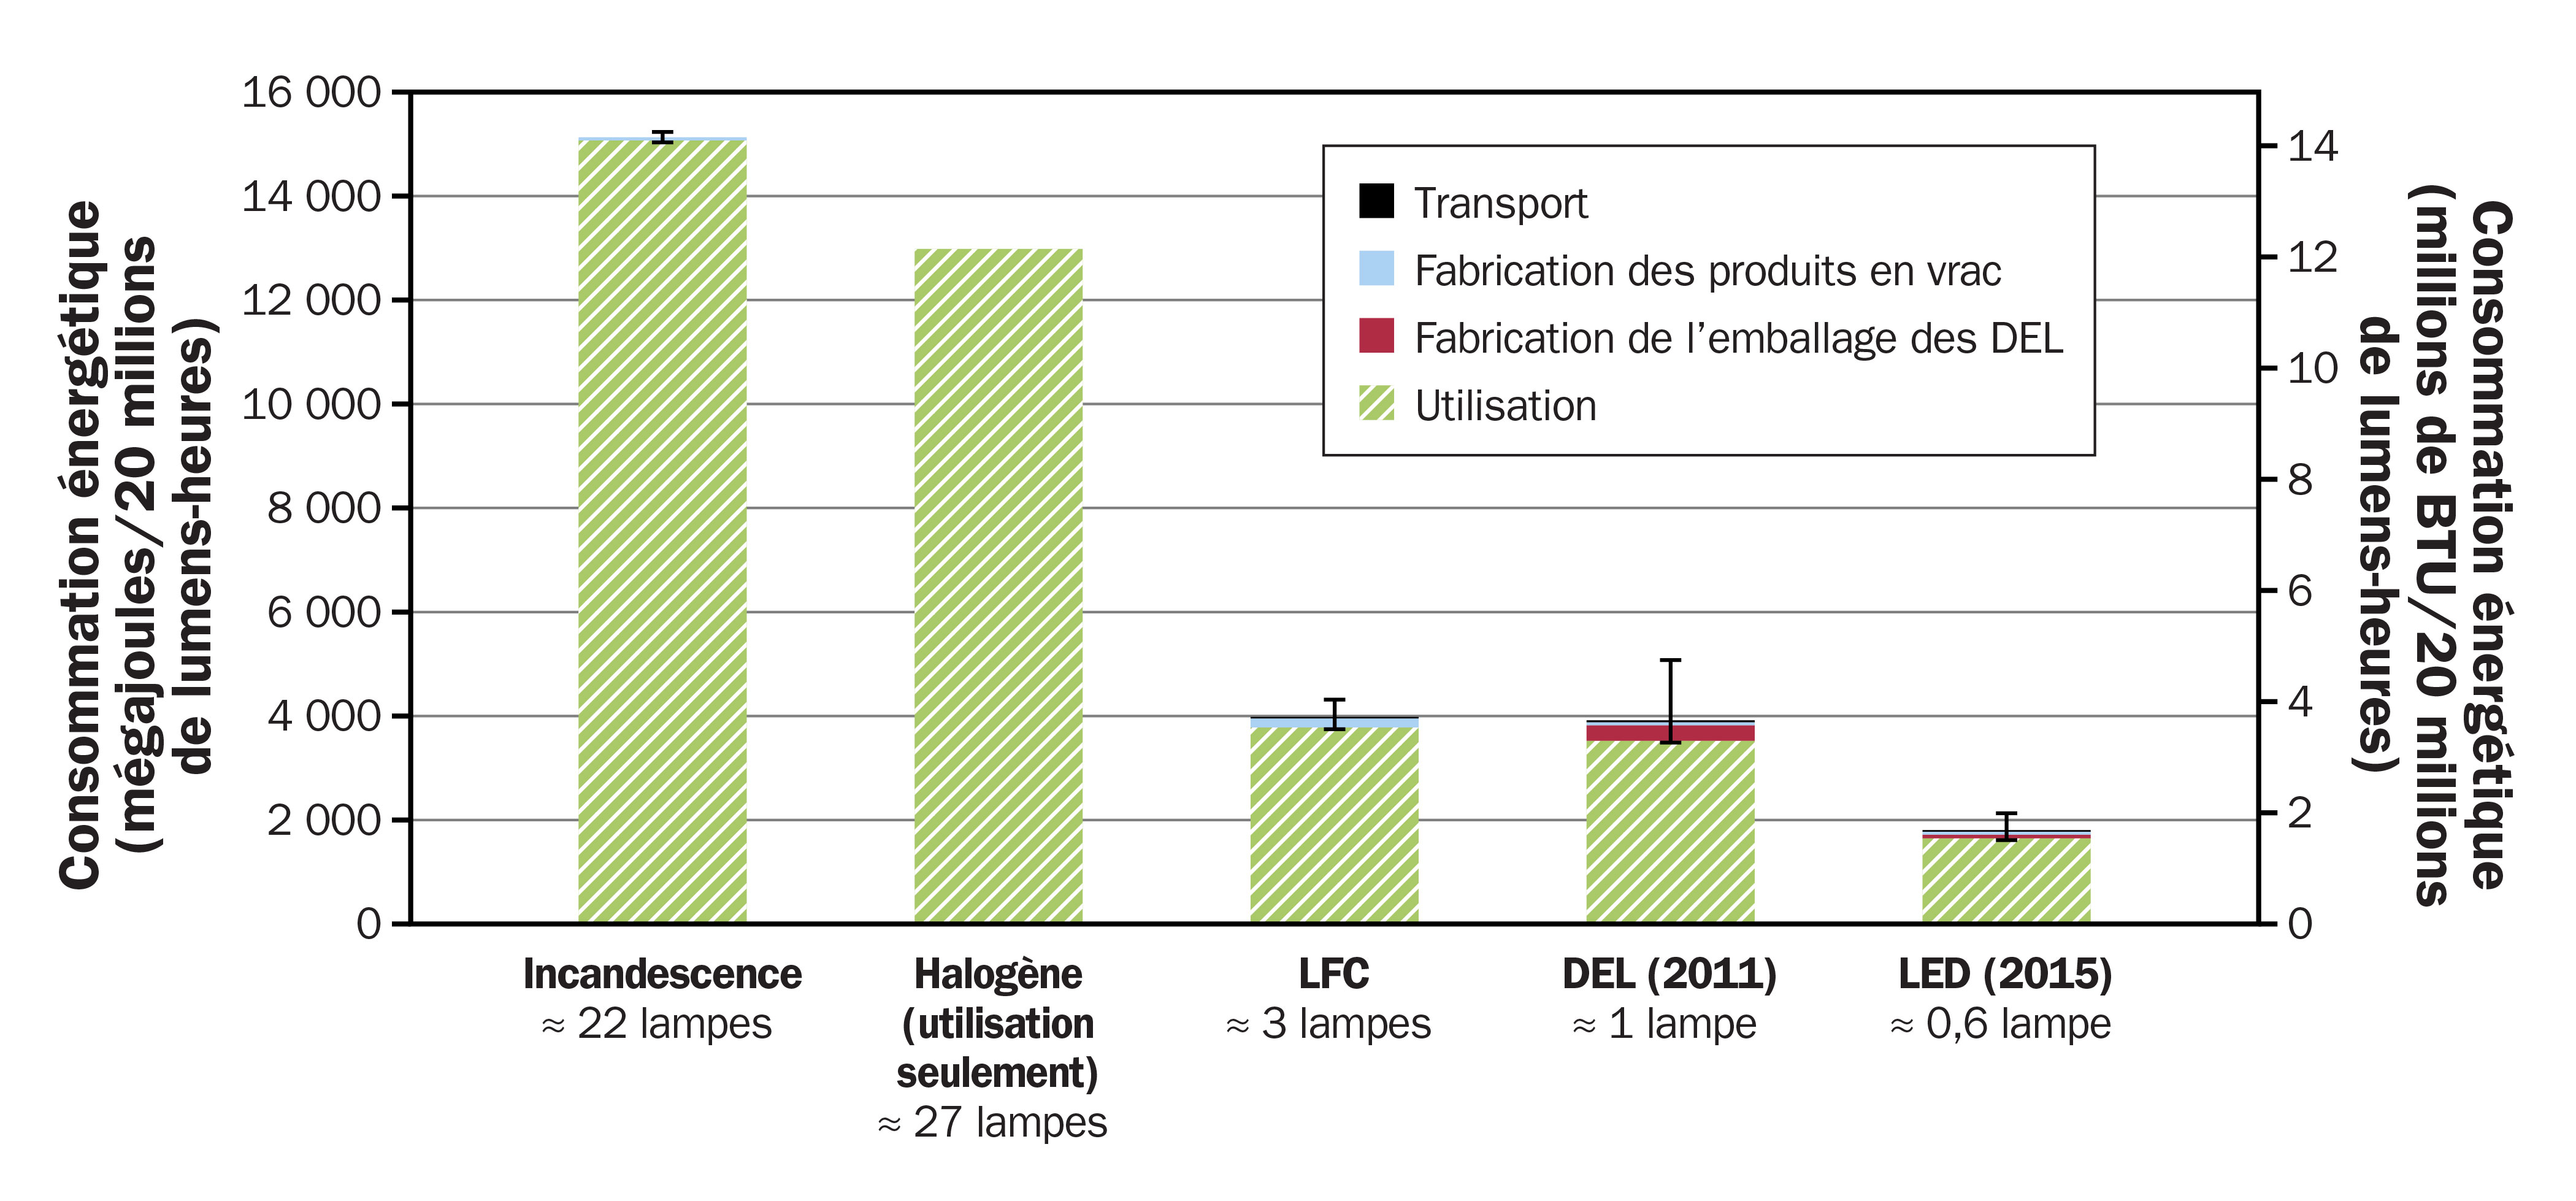 Diagramme en bâtons illustrant la consommation d’énergie totale à l’échelle du cycle de vie de différentes ampoules. Par ordre de consommation décroissante de gauche à droite : ampoule incandescente, halogène, fluocompacte, DEL 2011 et finalement DEL 2015.